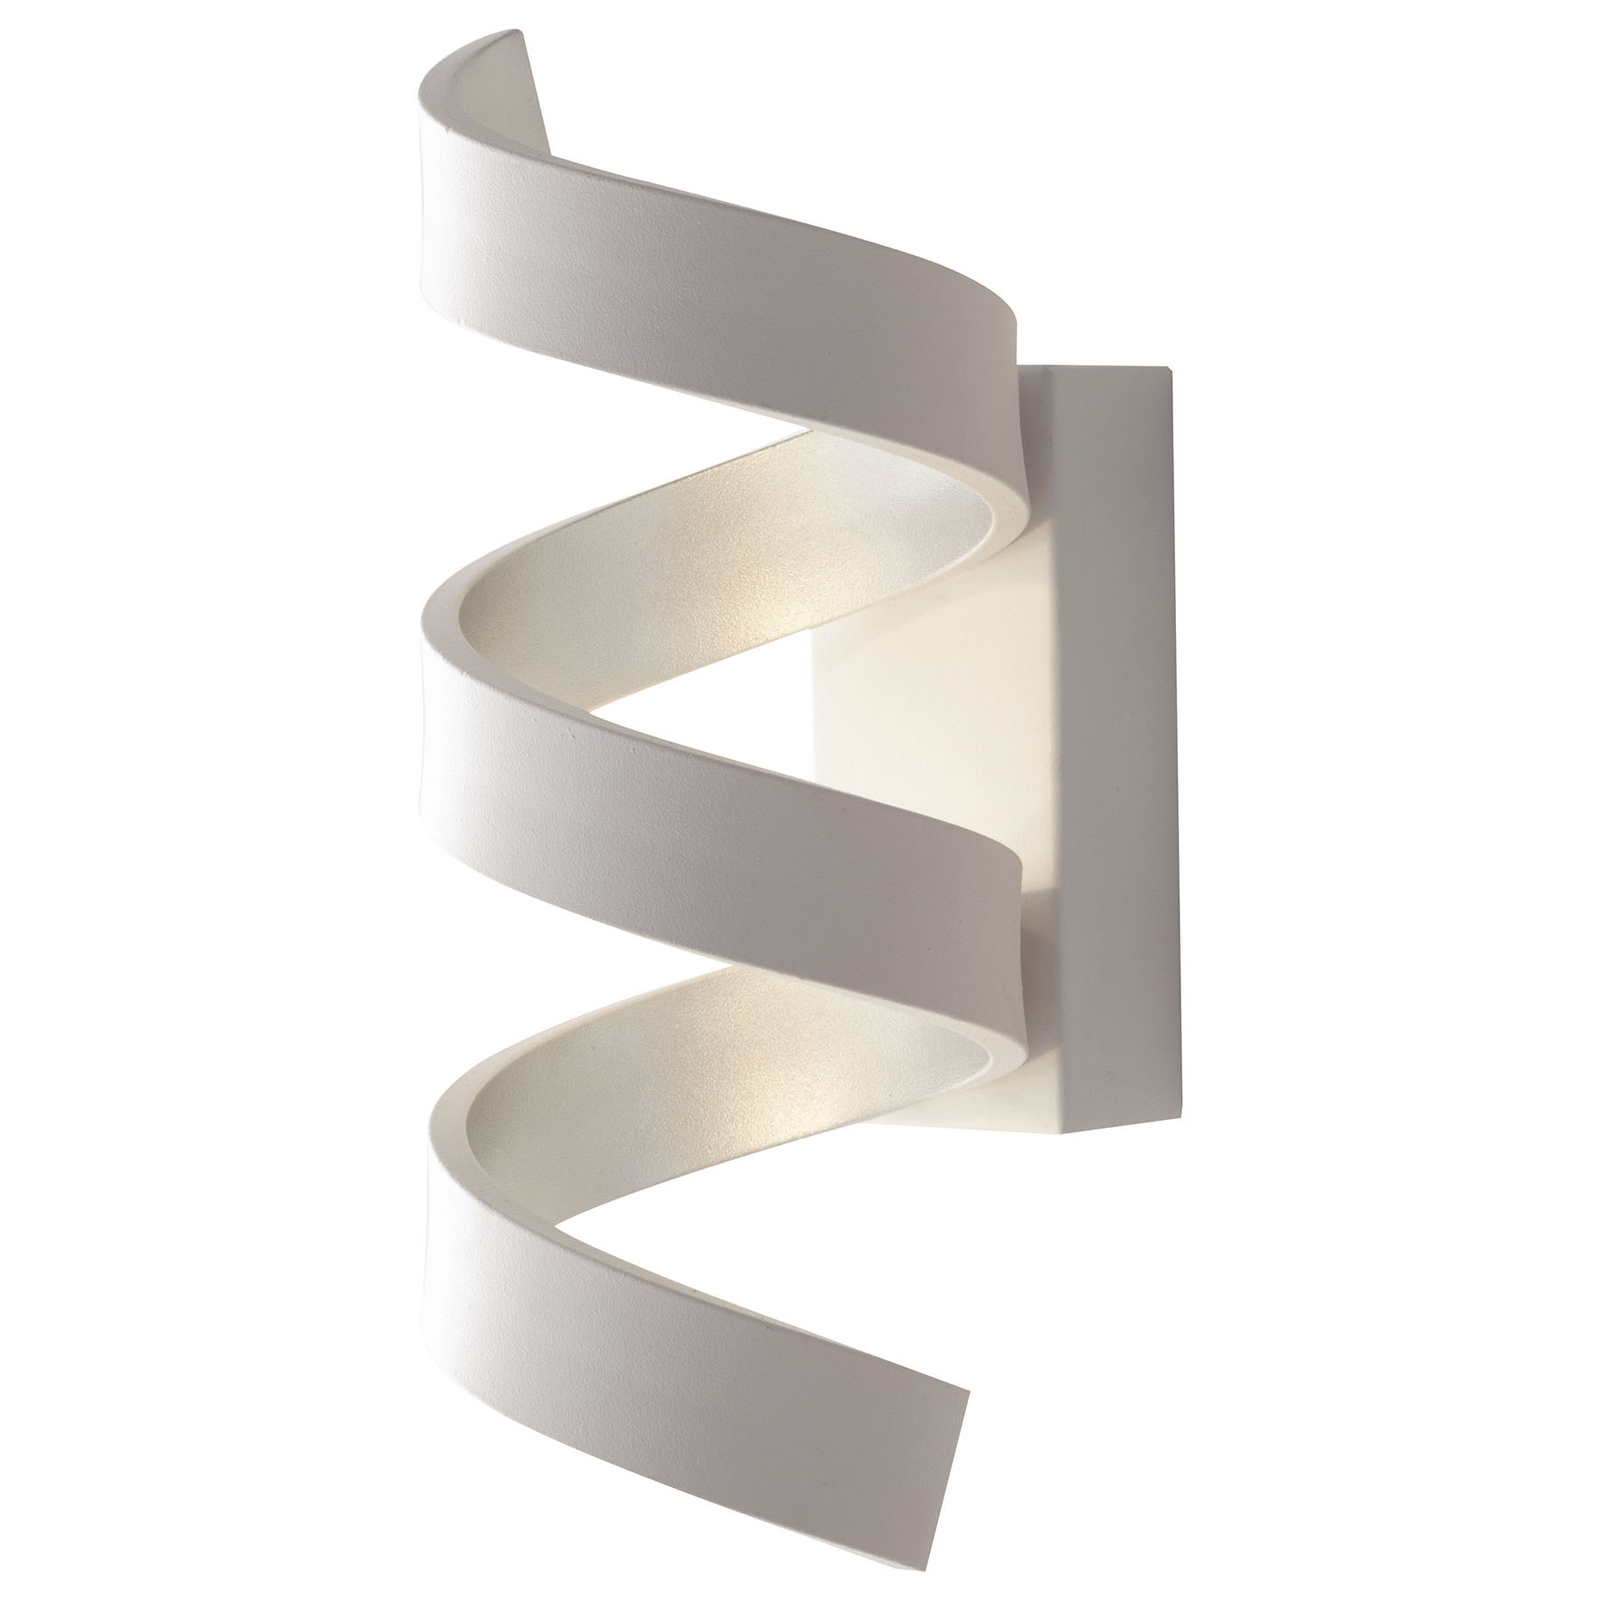 LED nástěnné světlo Helix, bílý stříbrný, 26 cm